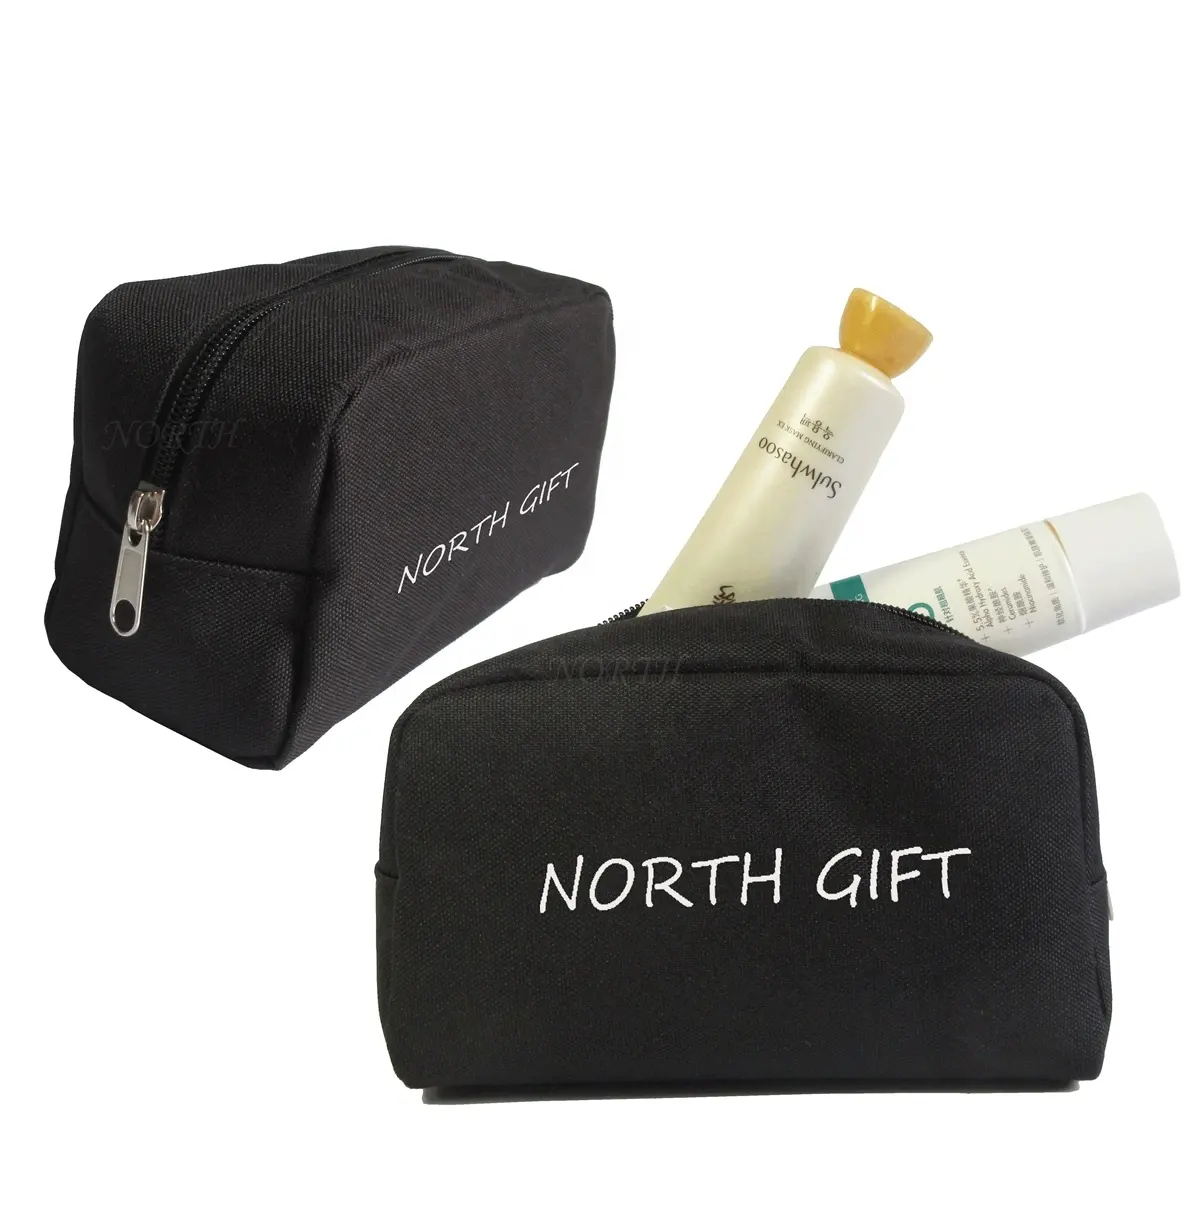 Bolsa de cosméticos reutilizável, bolsa de nylon preta para maquiagem com zíper, para viagem, feminina e masculina